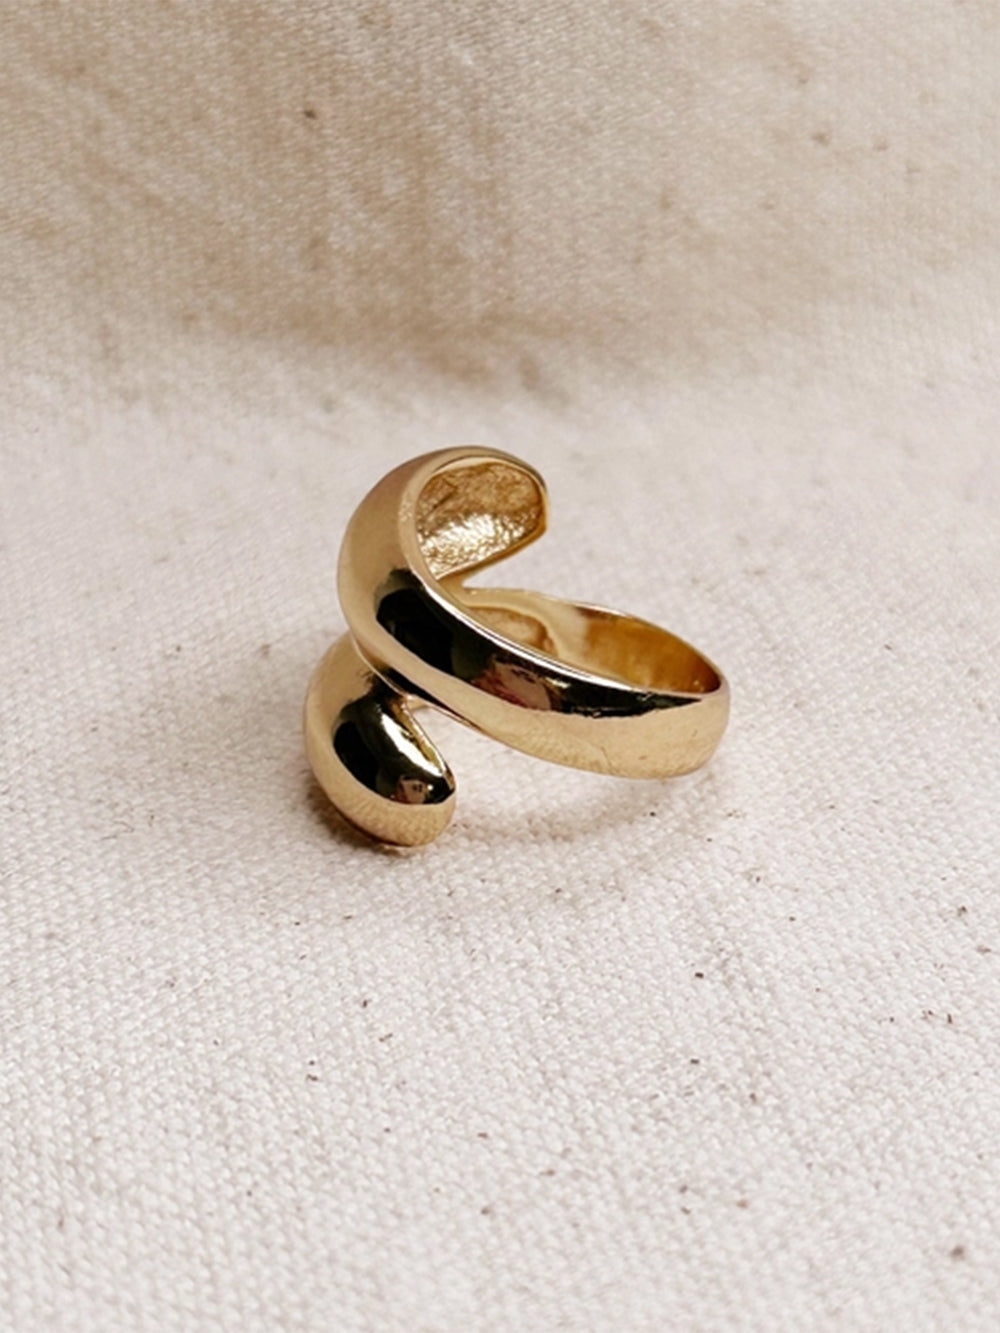 Wedding ring 1/20 10K gold filled band women girls – SpiritbeadNW